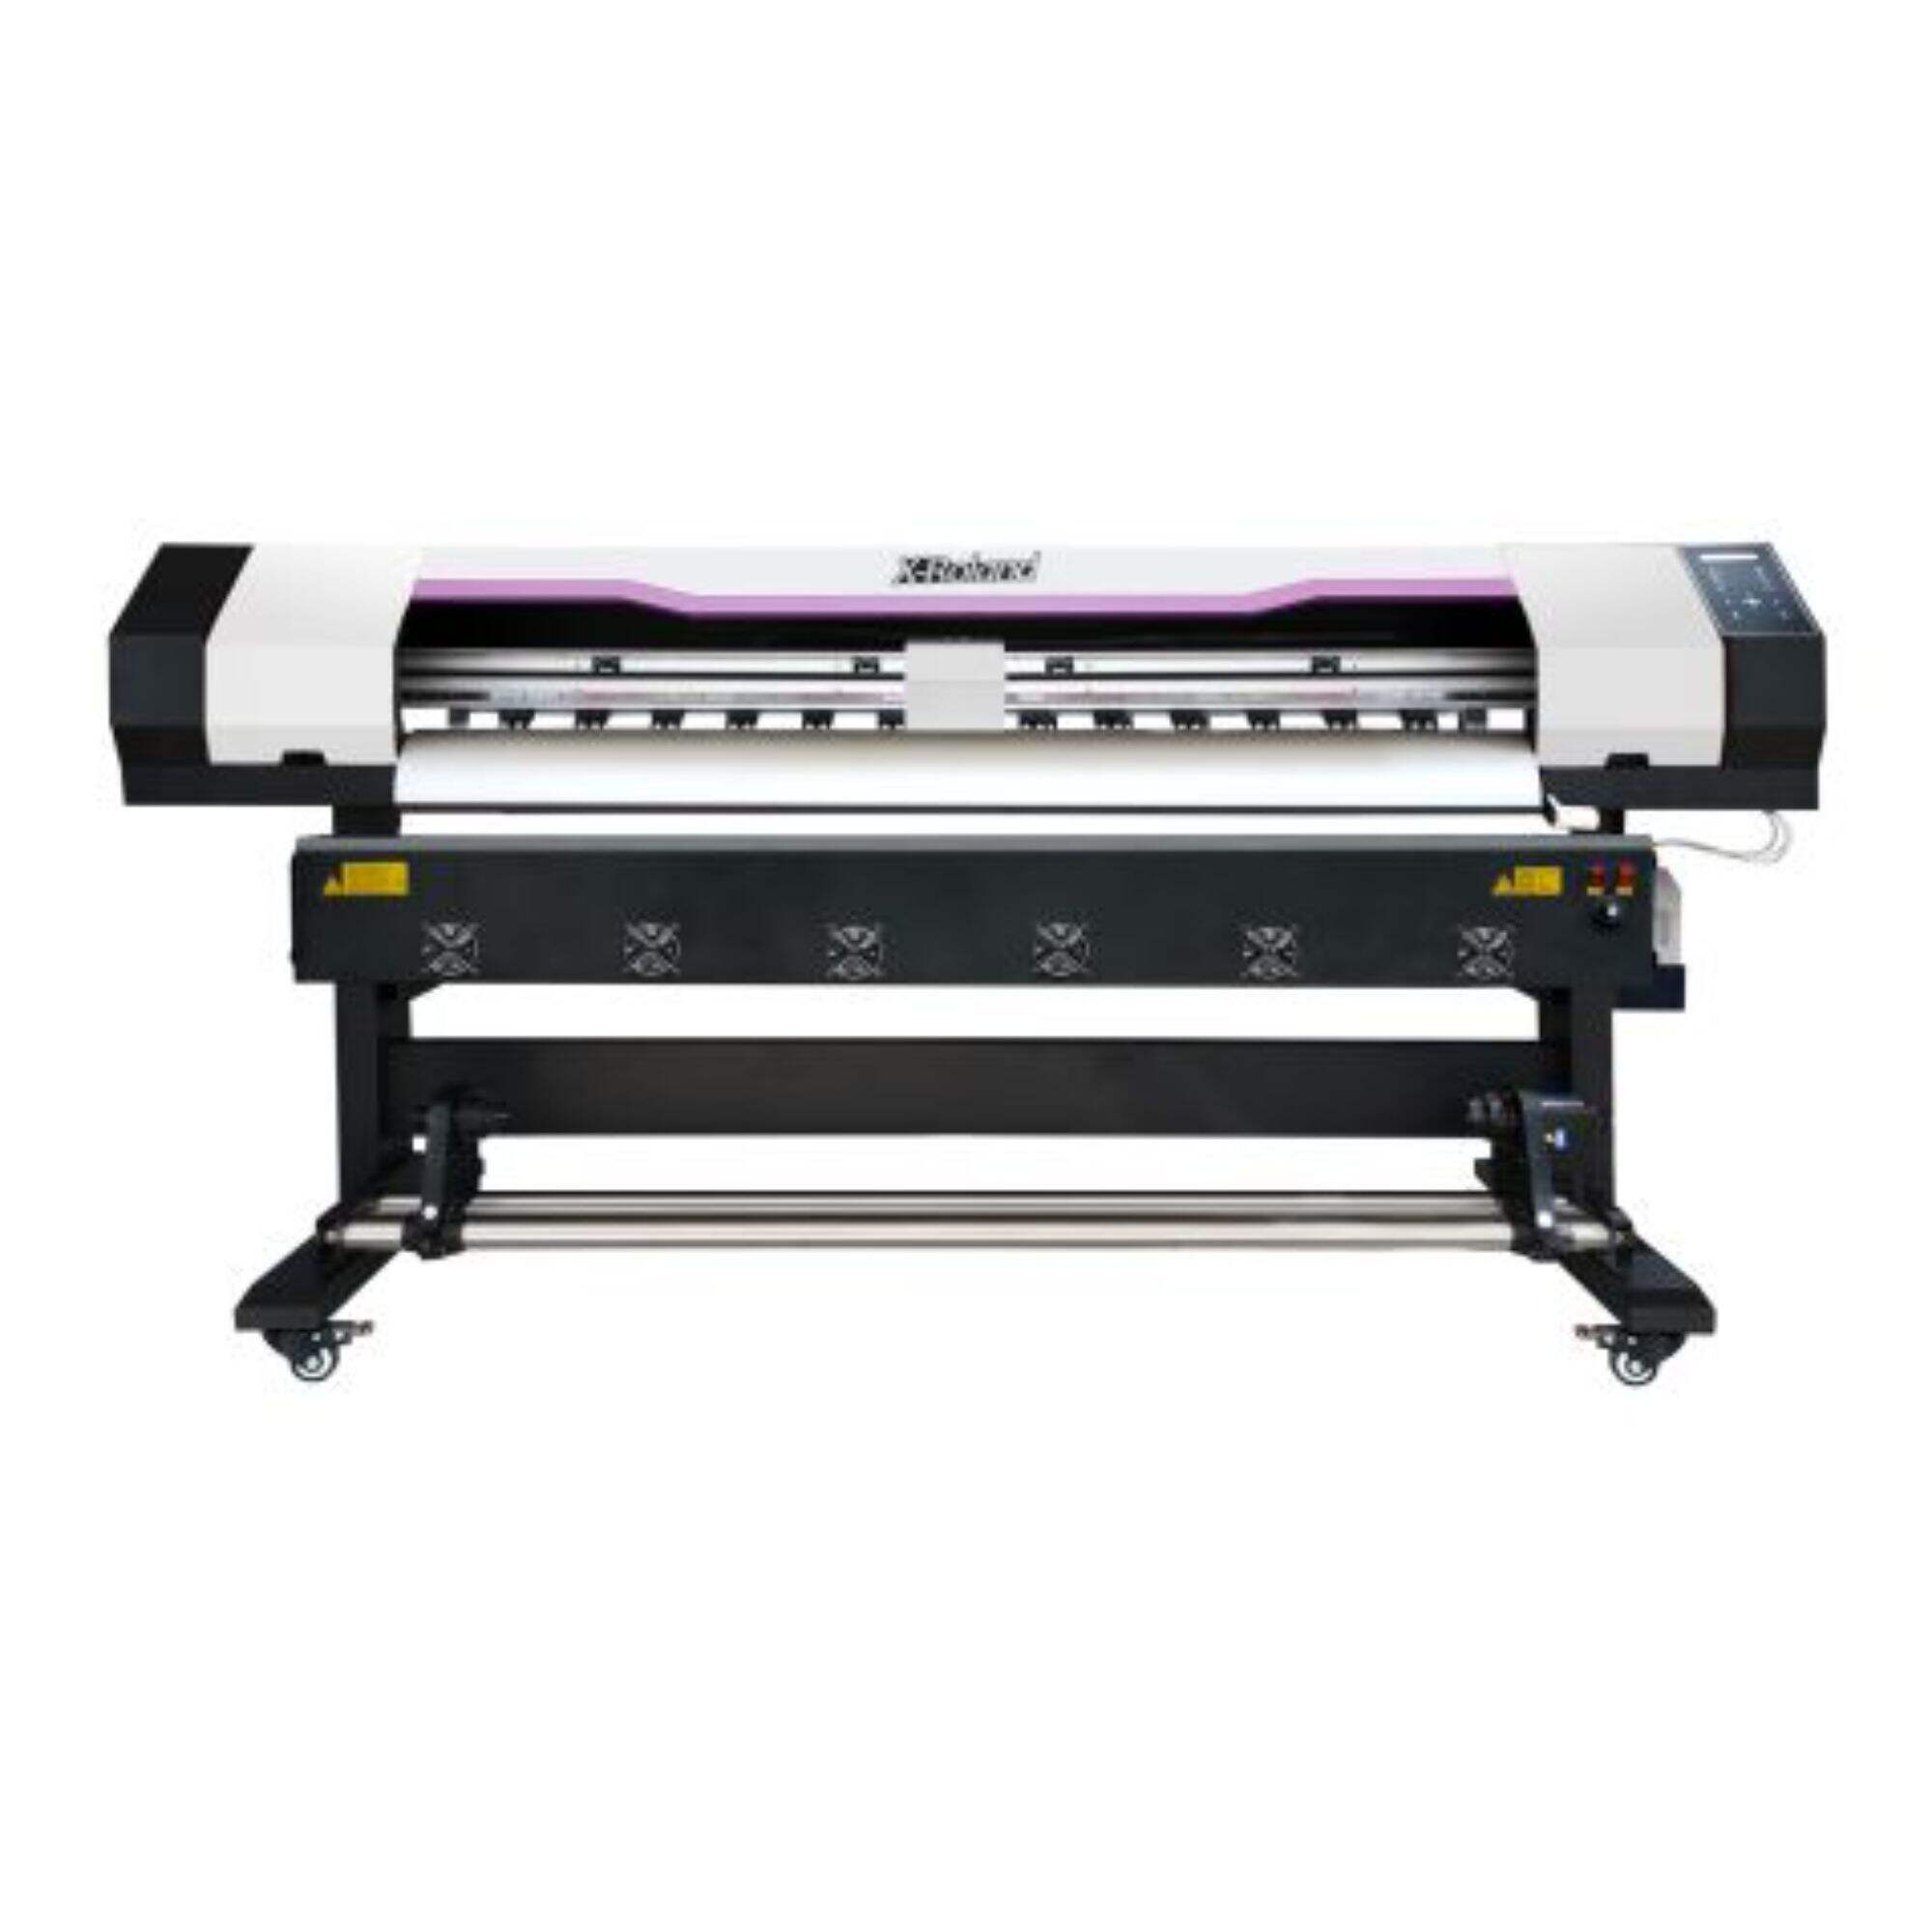 XL-1680S,1850S  Indoor/outdoor printer